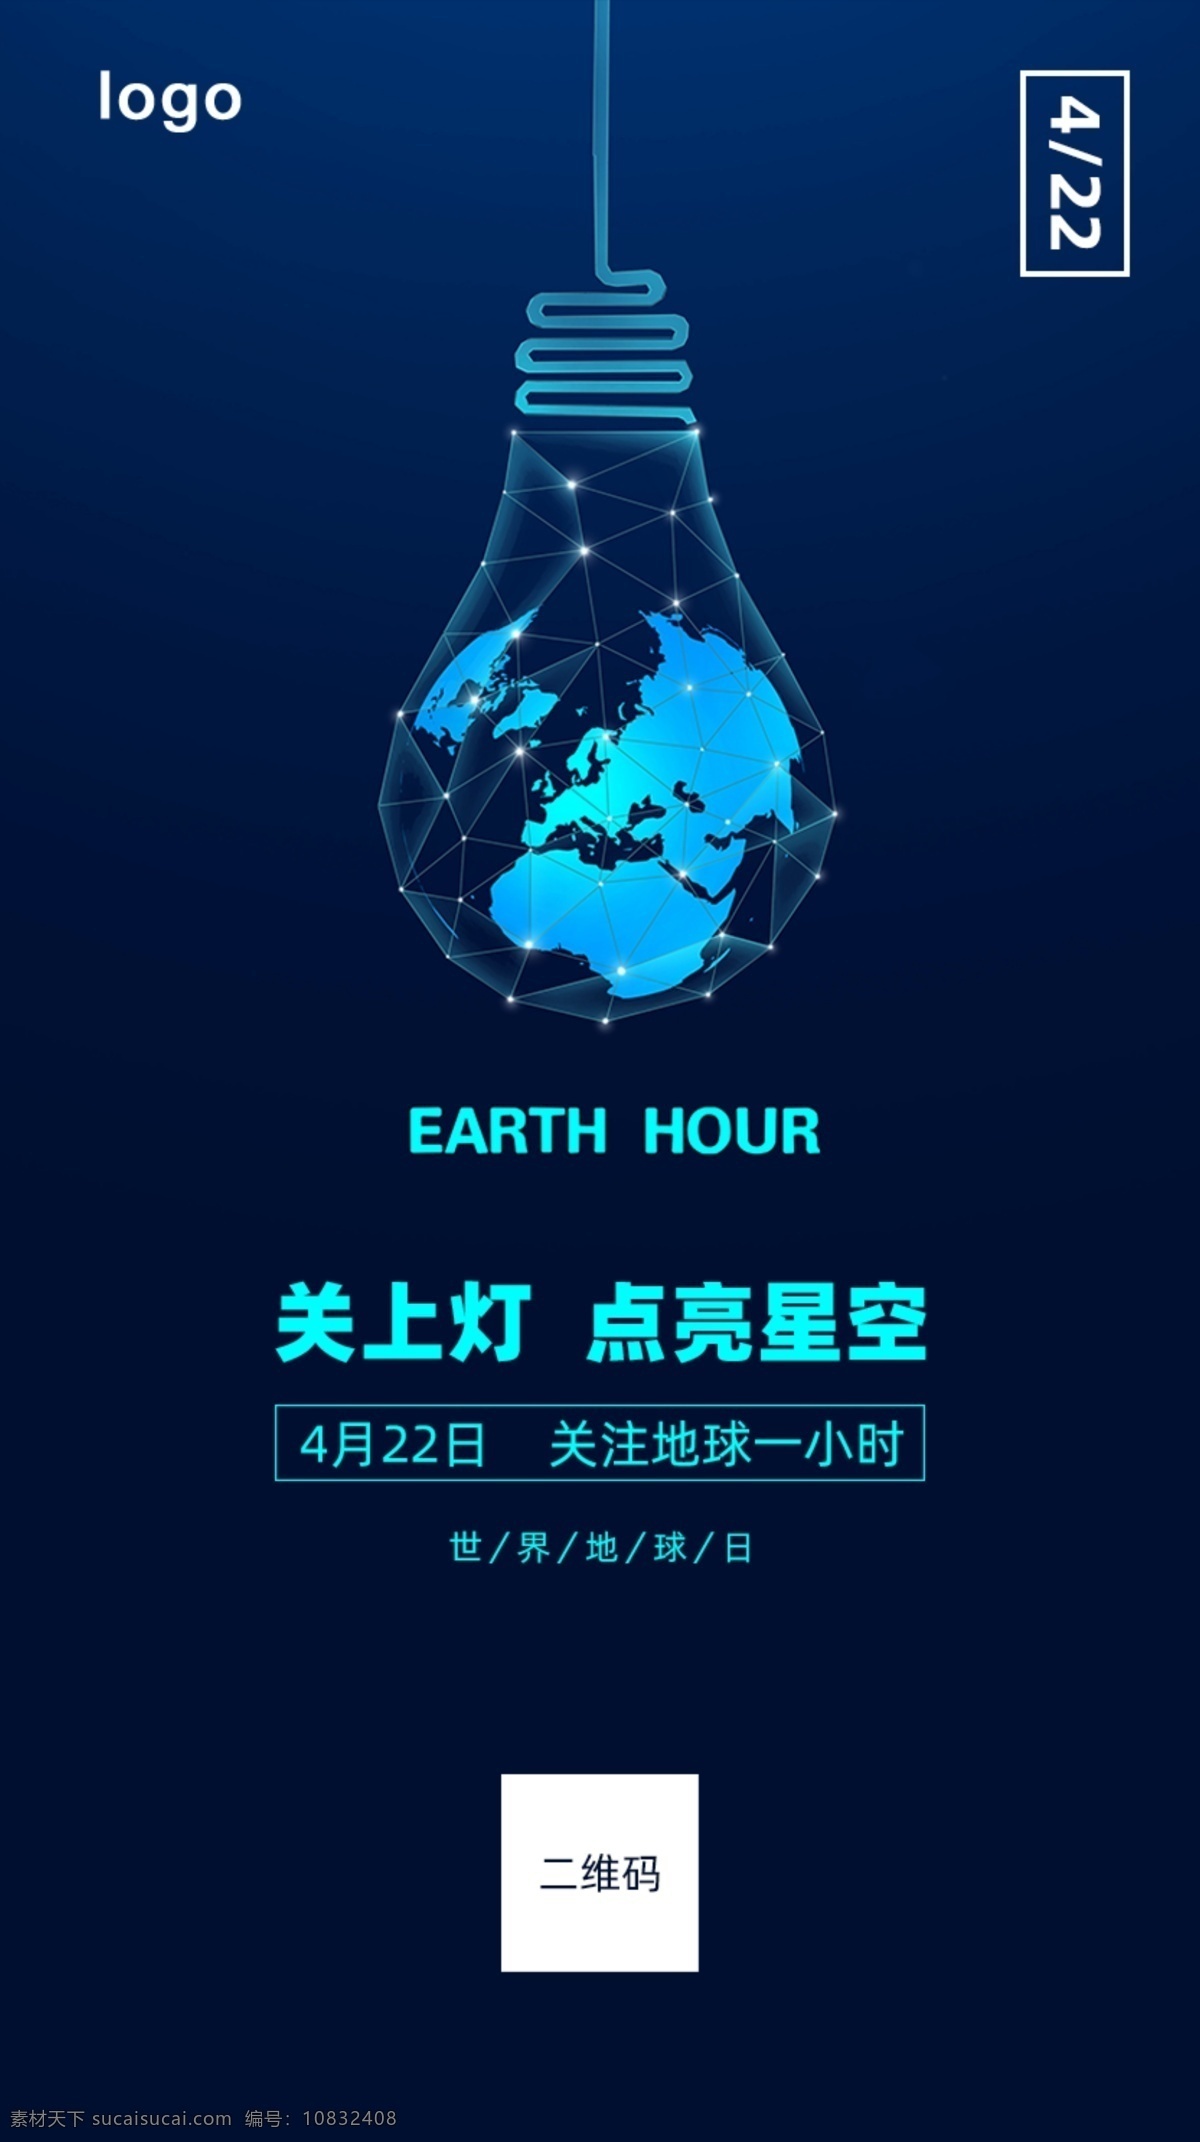 世界 地球日 手机 海报 app 启动 页 地球 关灯 4月22日 保护地球 地球1小时 移动界面设计 客户端界面